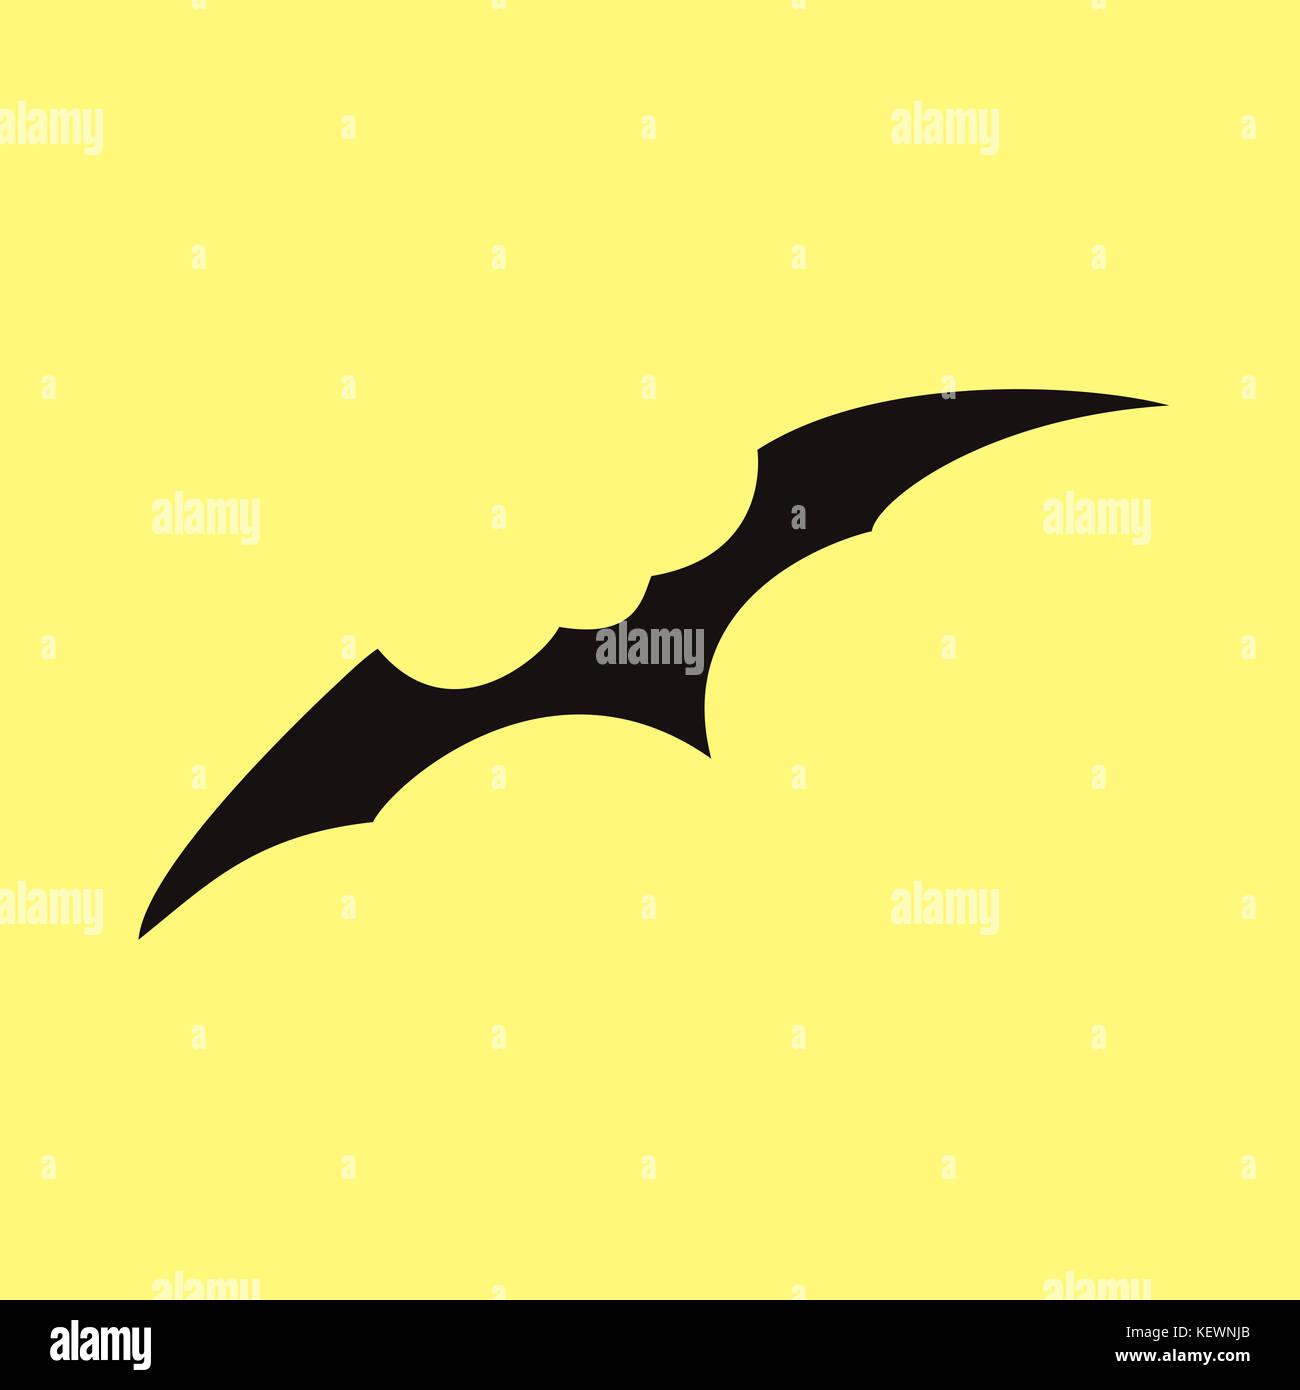 Illustrazione di spooky bat su sfondo giallo, concetto di halloween Foto Stock